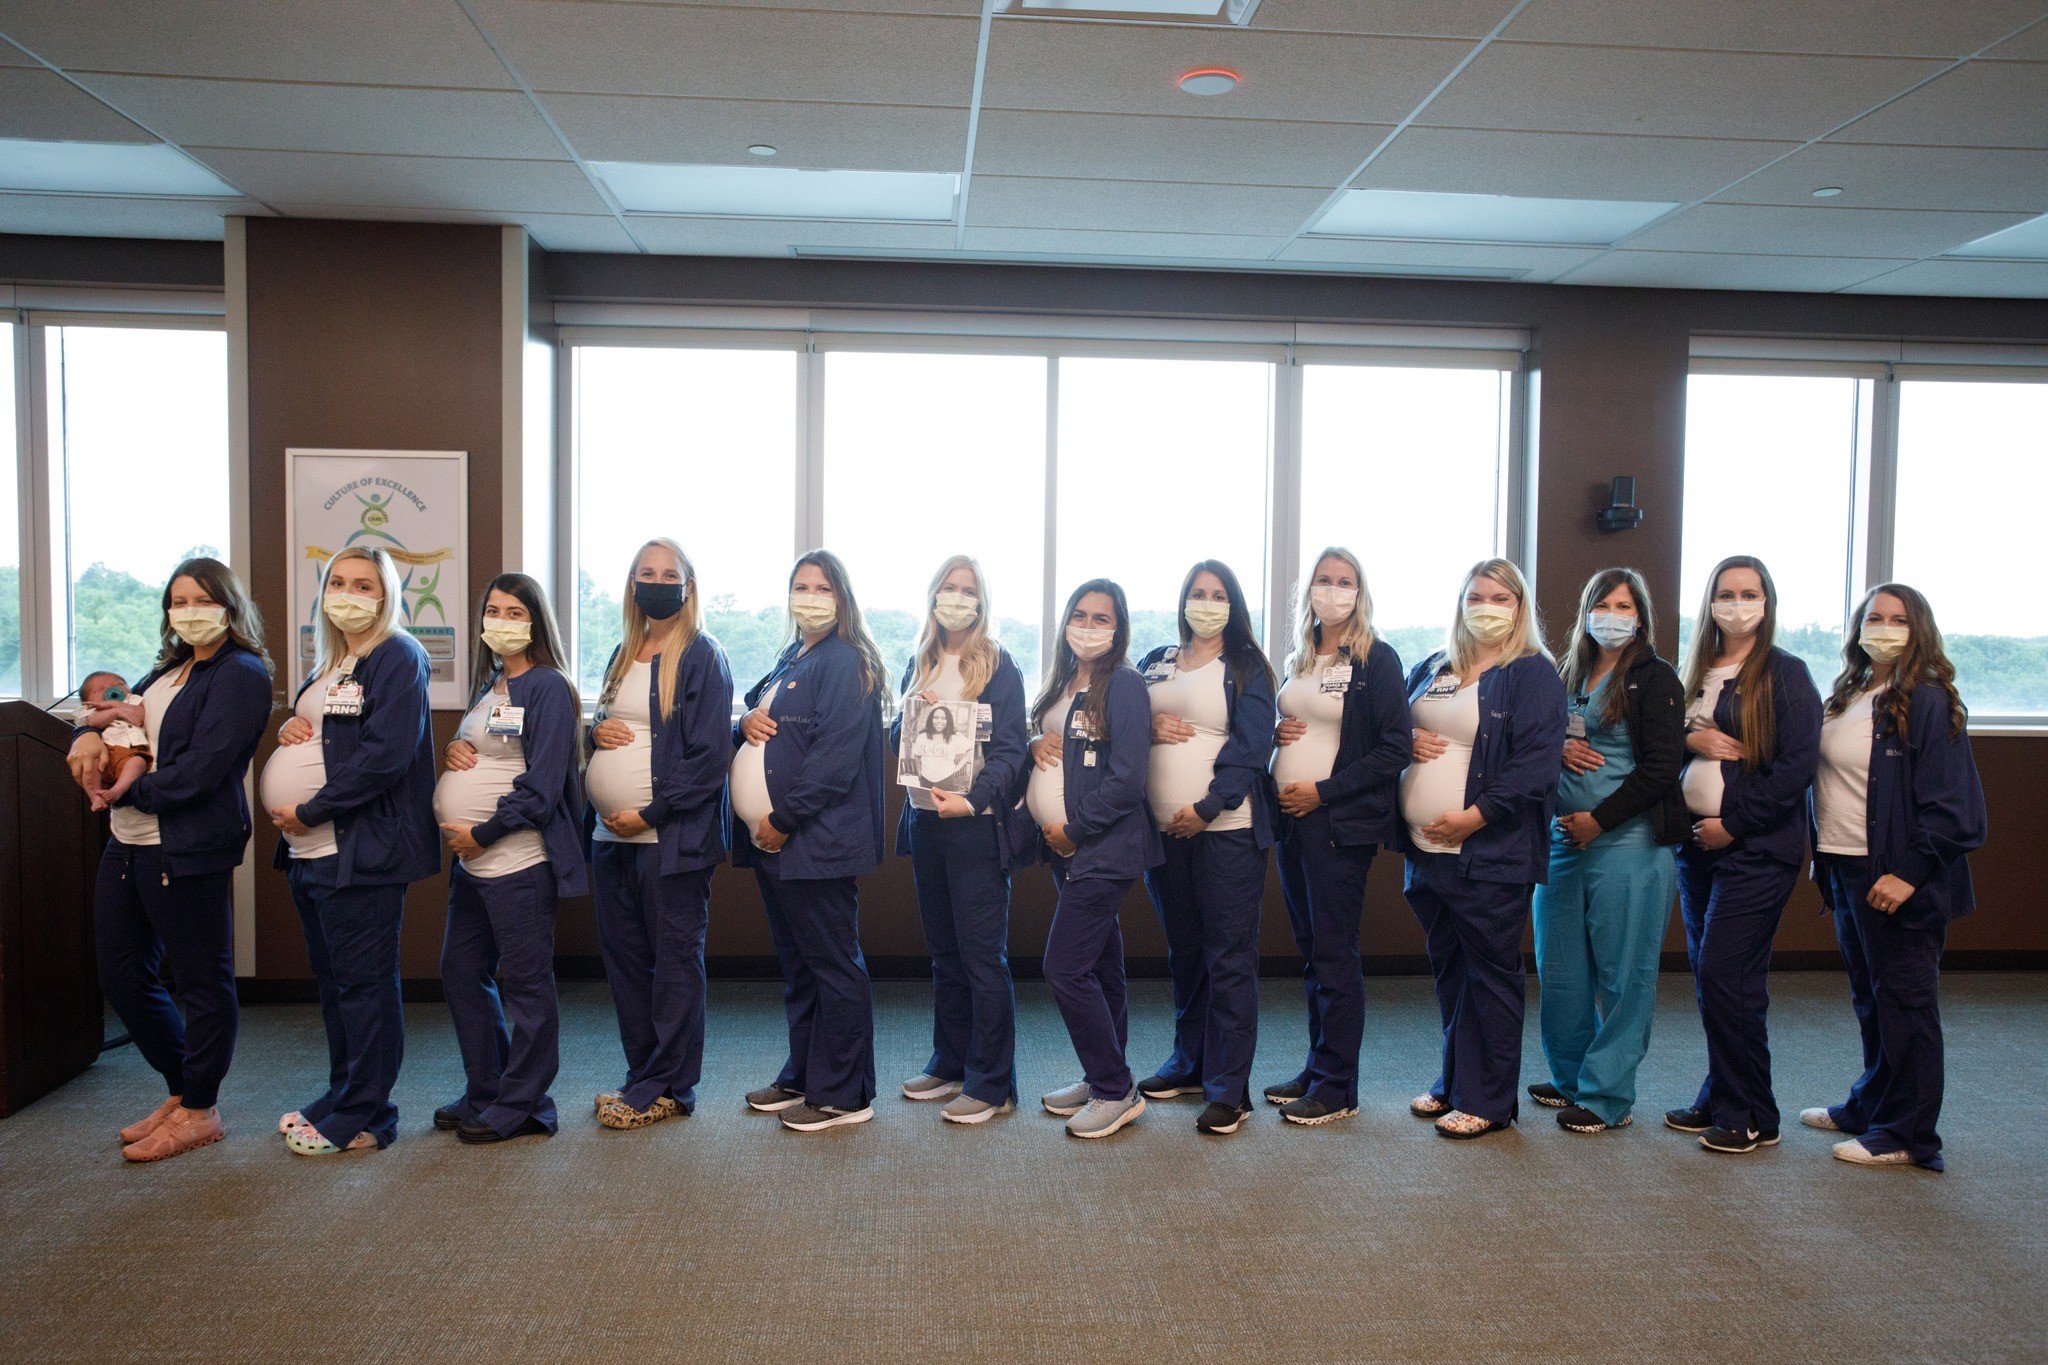 14 enfermeiras de hospital dos EUA ficam grávidas ao mesmo tempo: 'Baby boom' (Foto: reprodução/ Facebook Saint Luke’s Hospital)